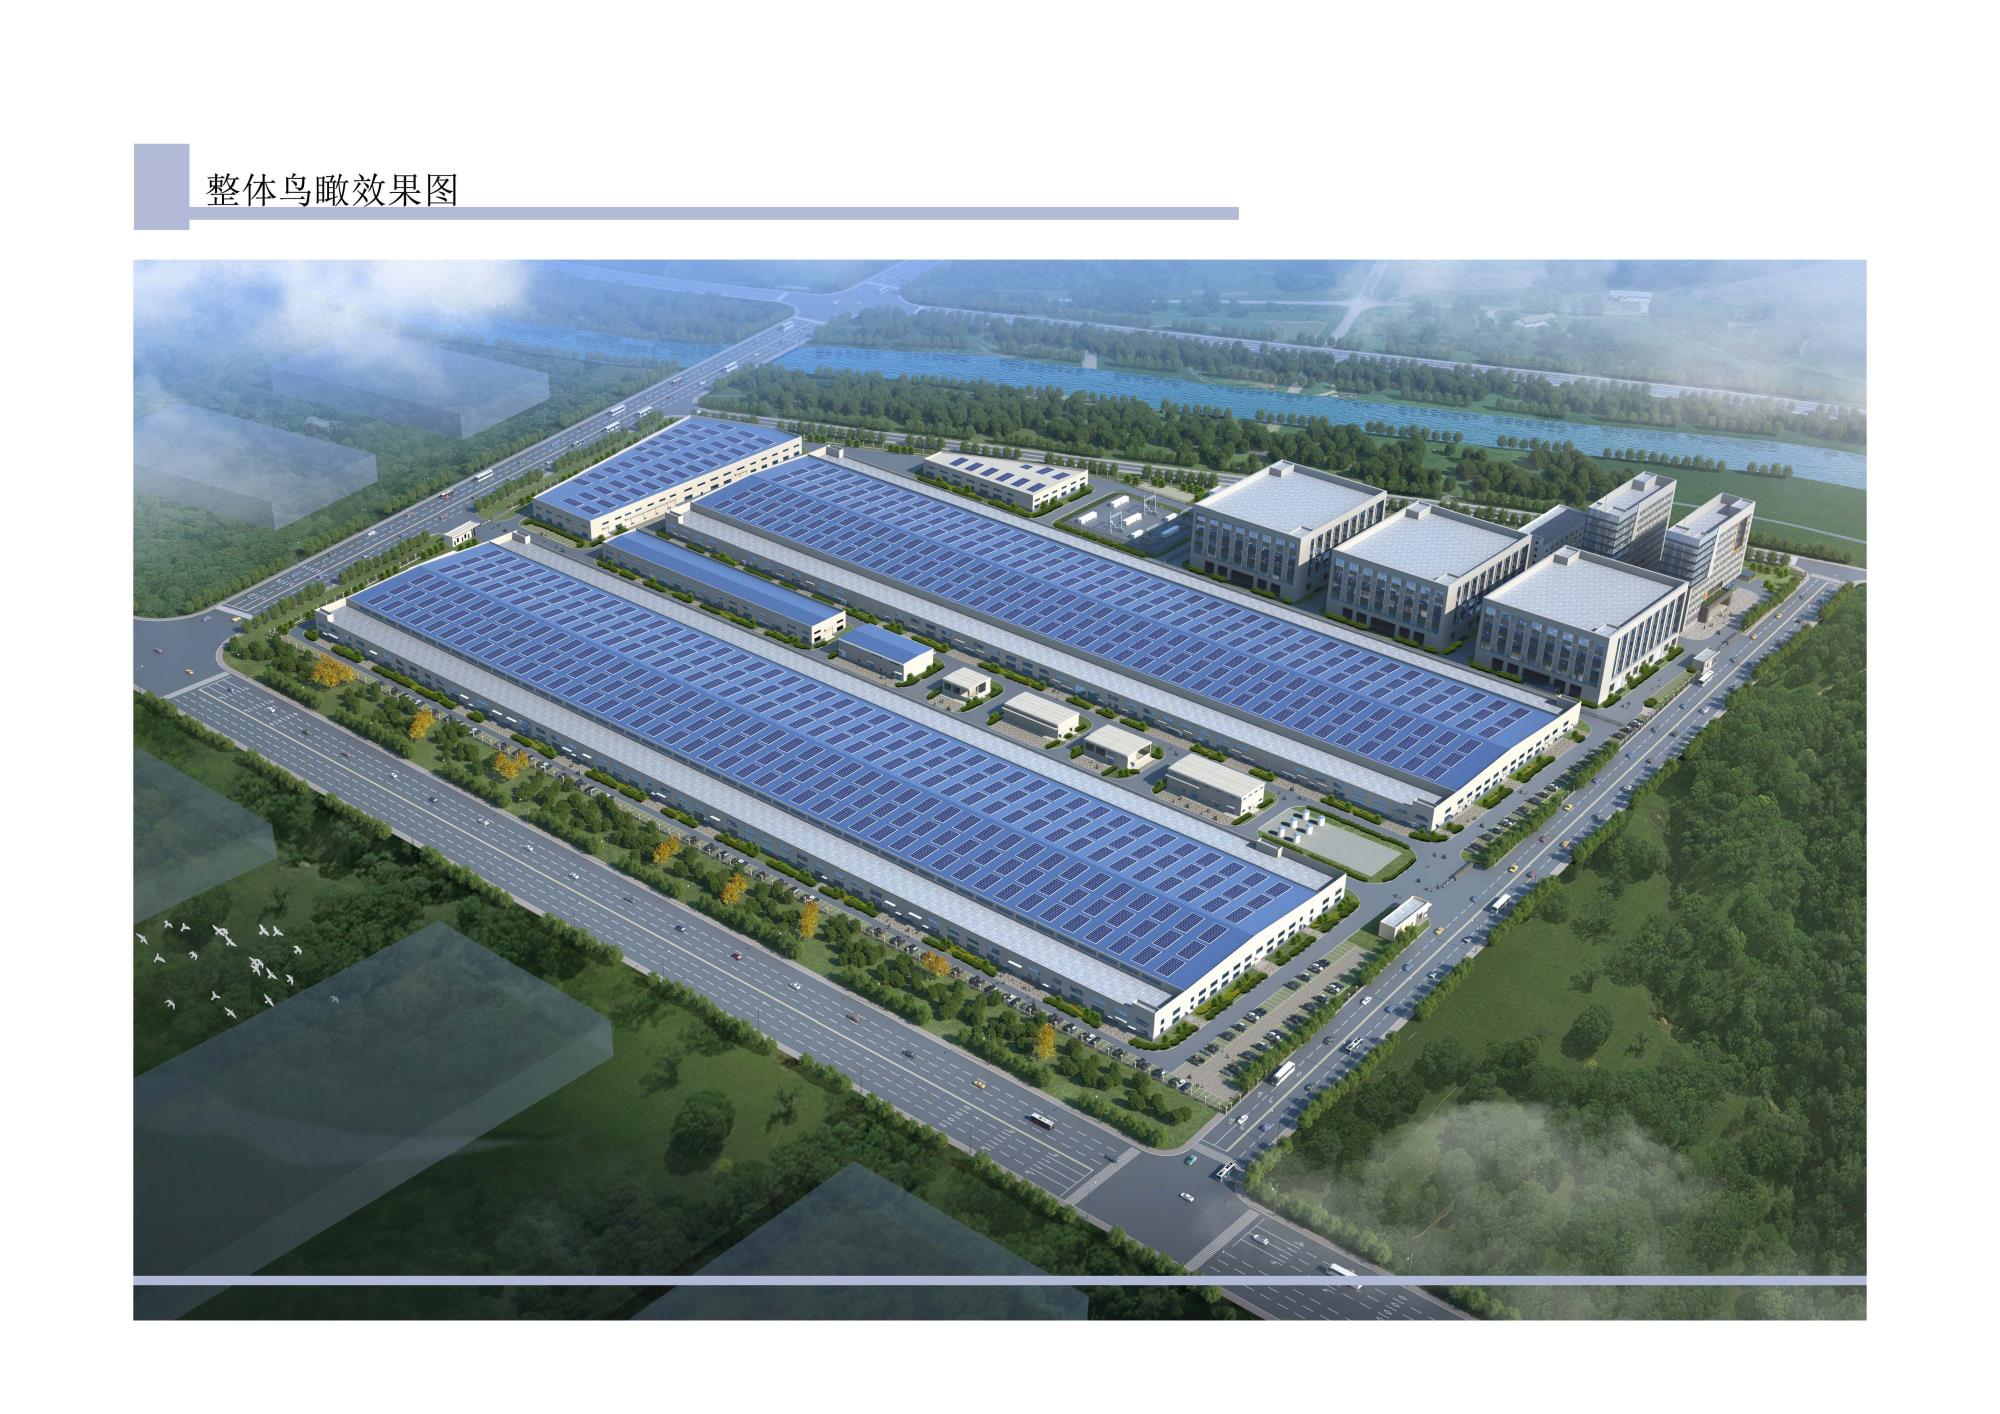 徐州高新技術產業開發區鴻碩建設管理有限公司光伏電池研發基地基礎設施項目